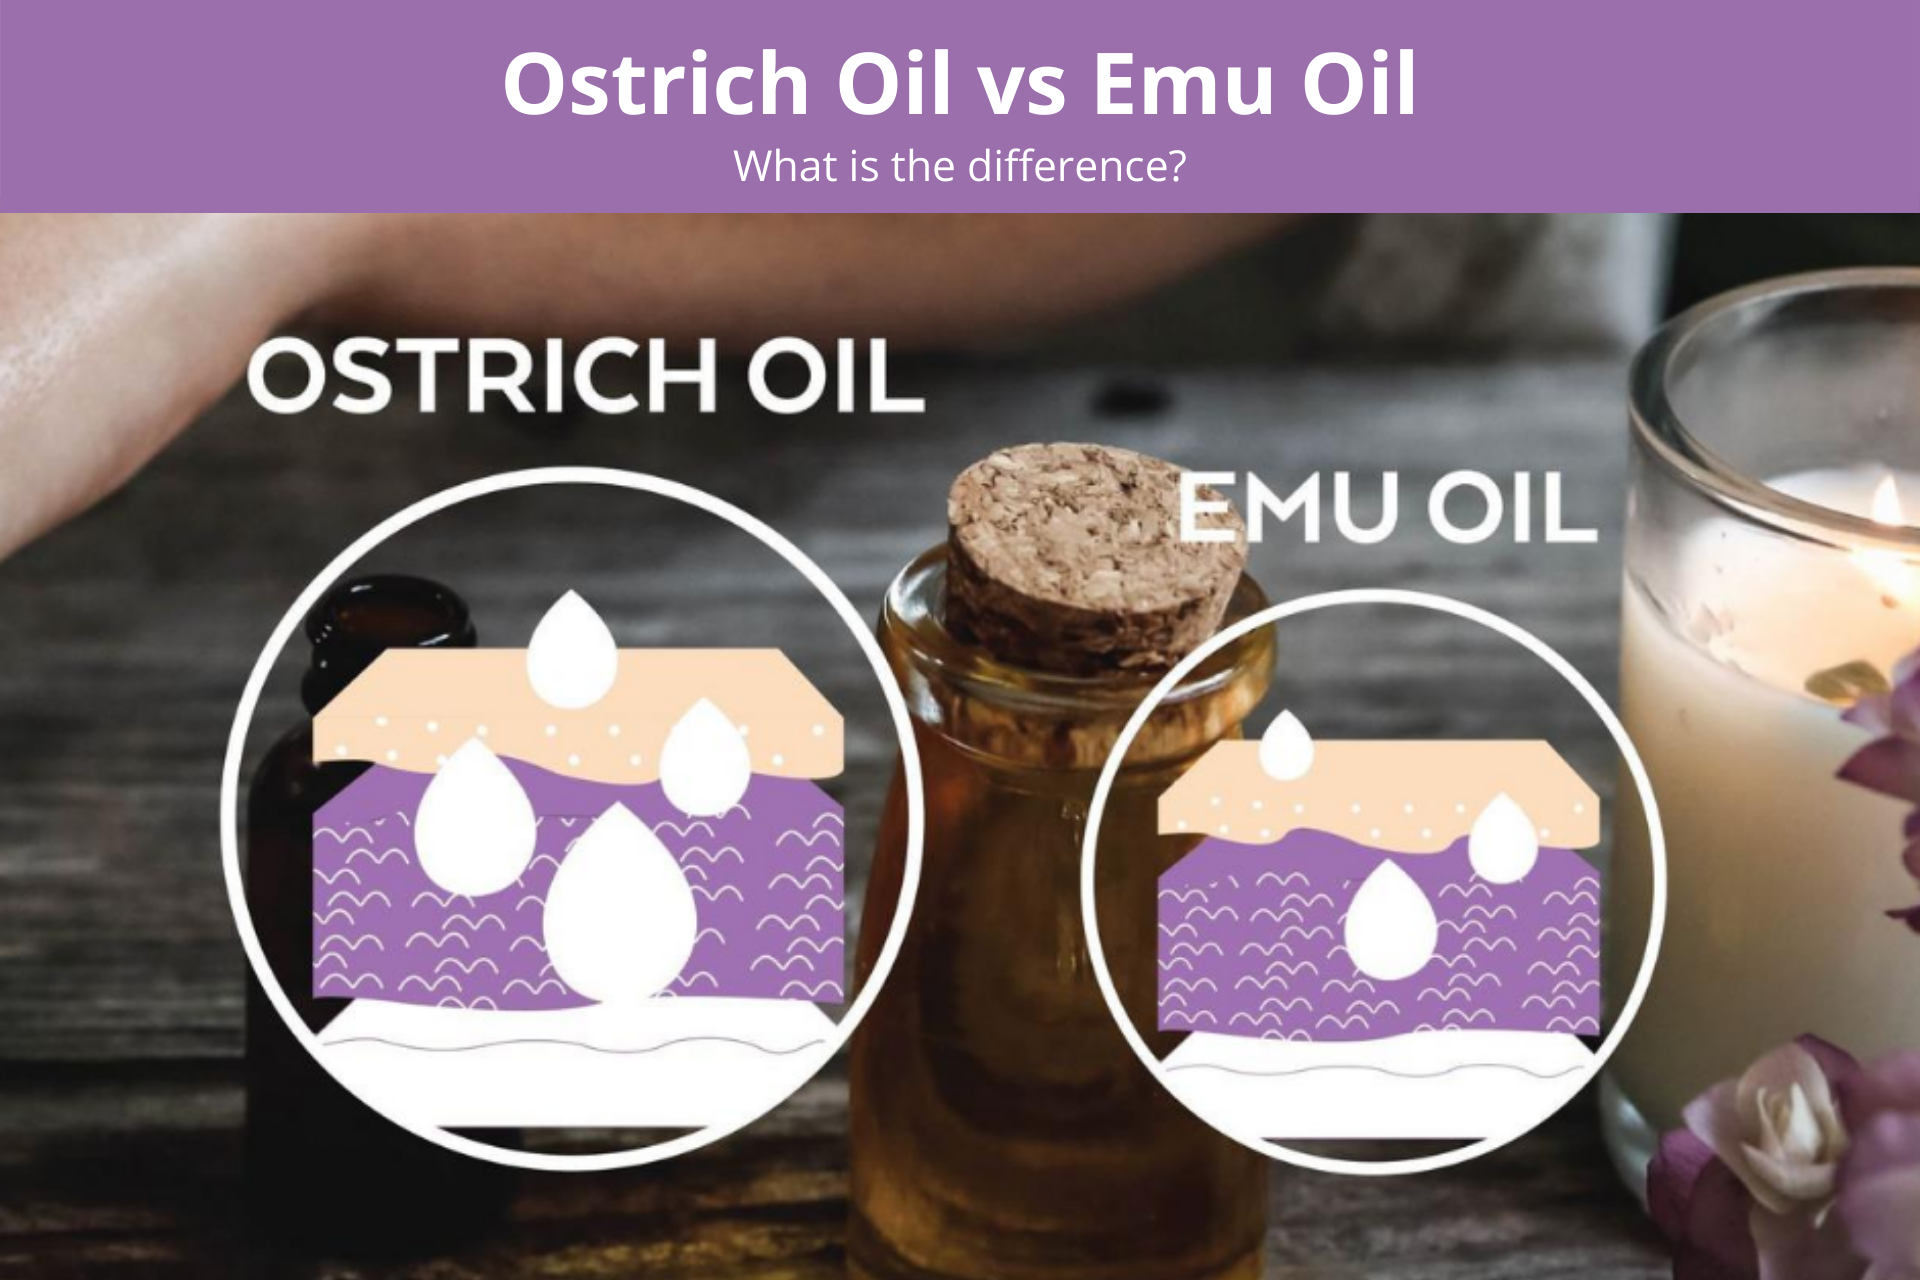 Ostrich oil vs. Emu oil